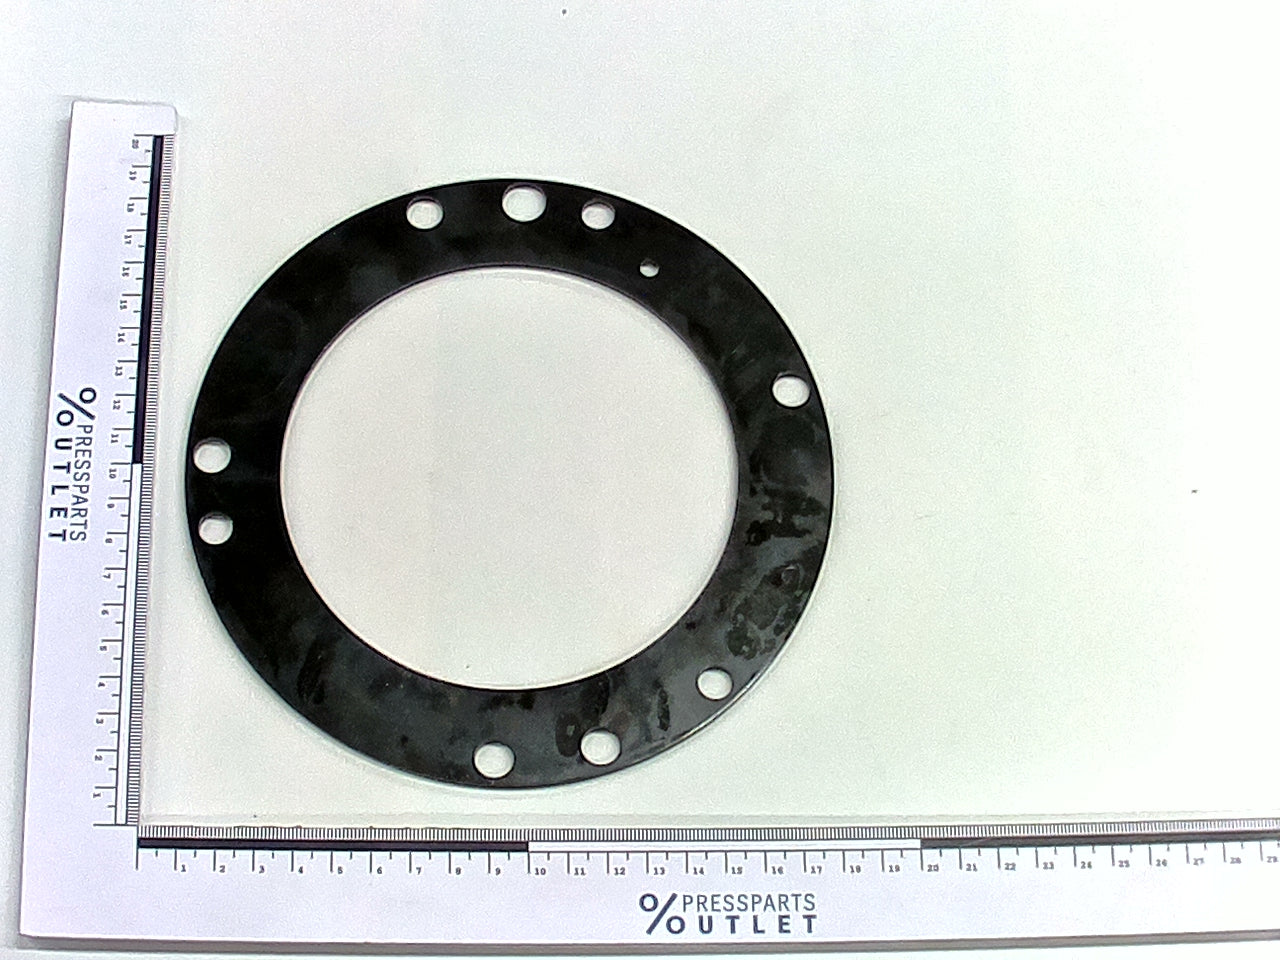 Sealing plate - F6.011.113 /01 - Abdichtblech